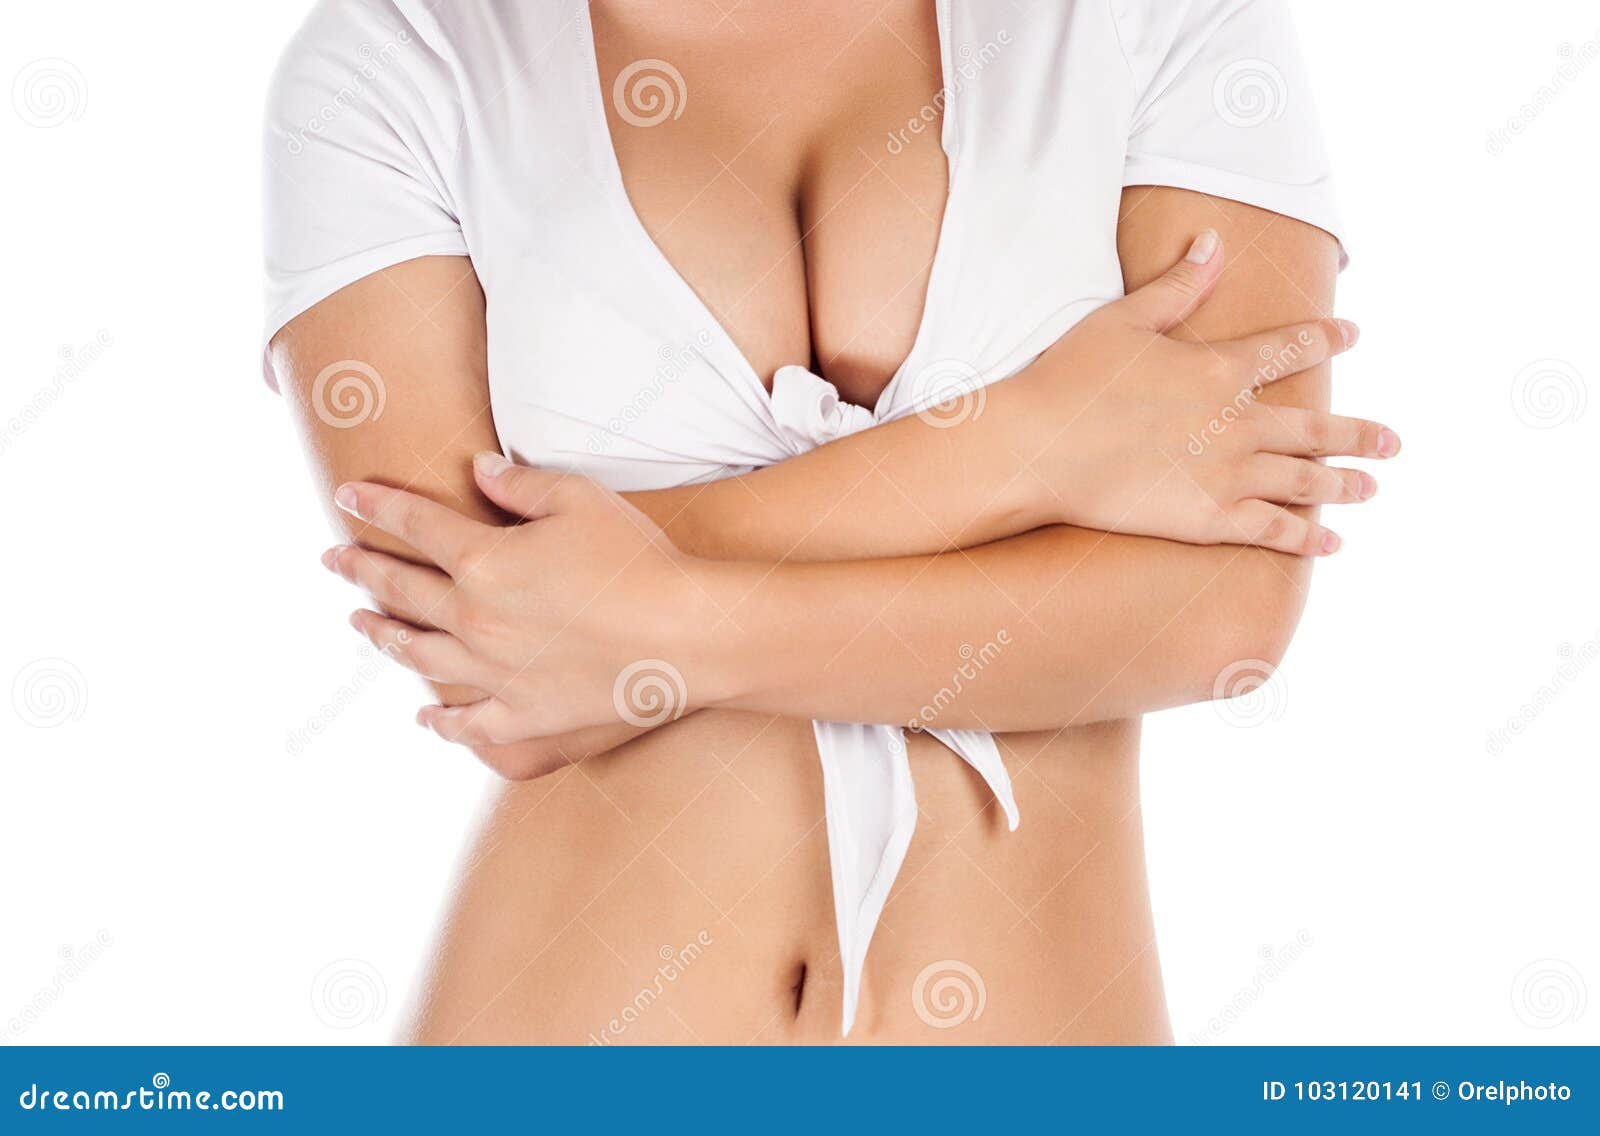 boobs girl no shirt or bra